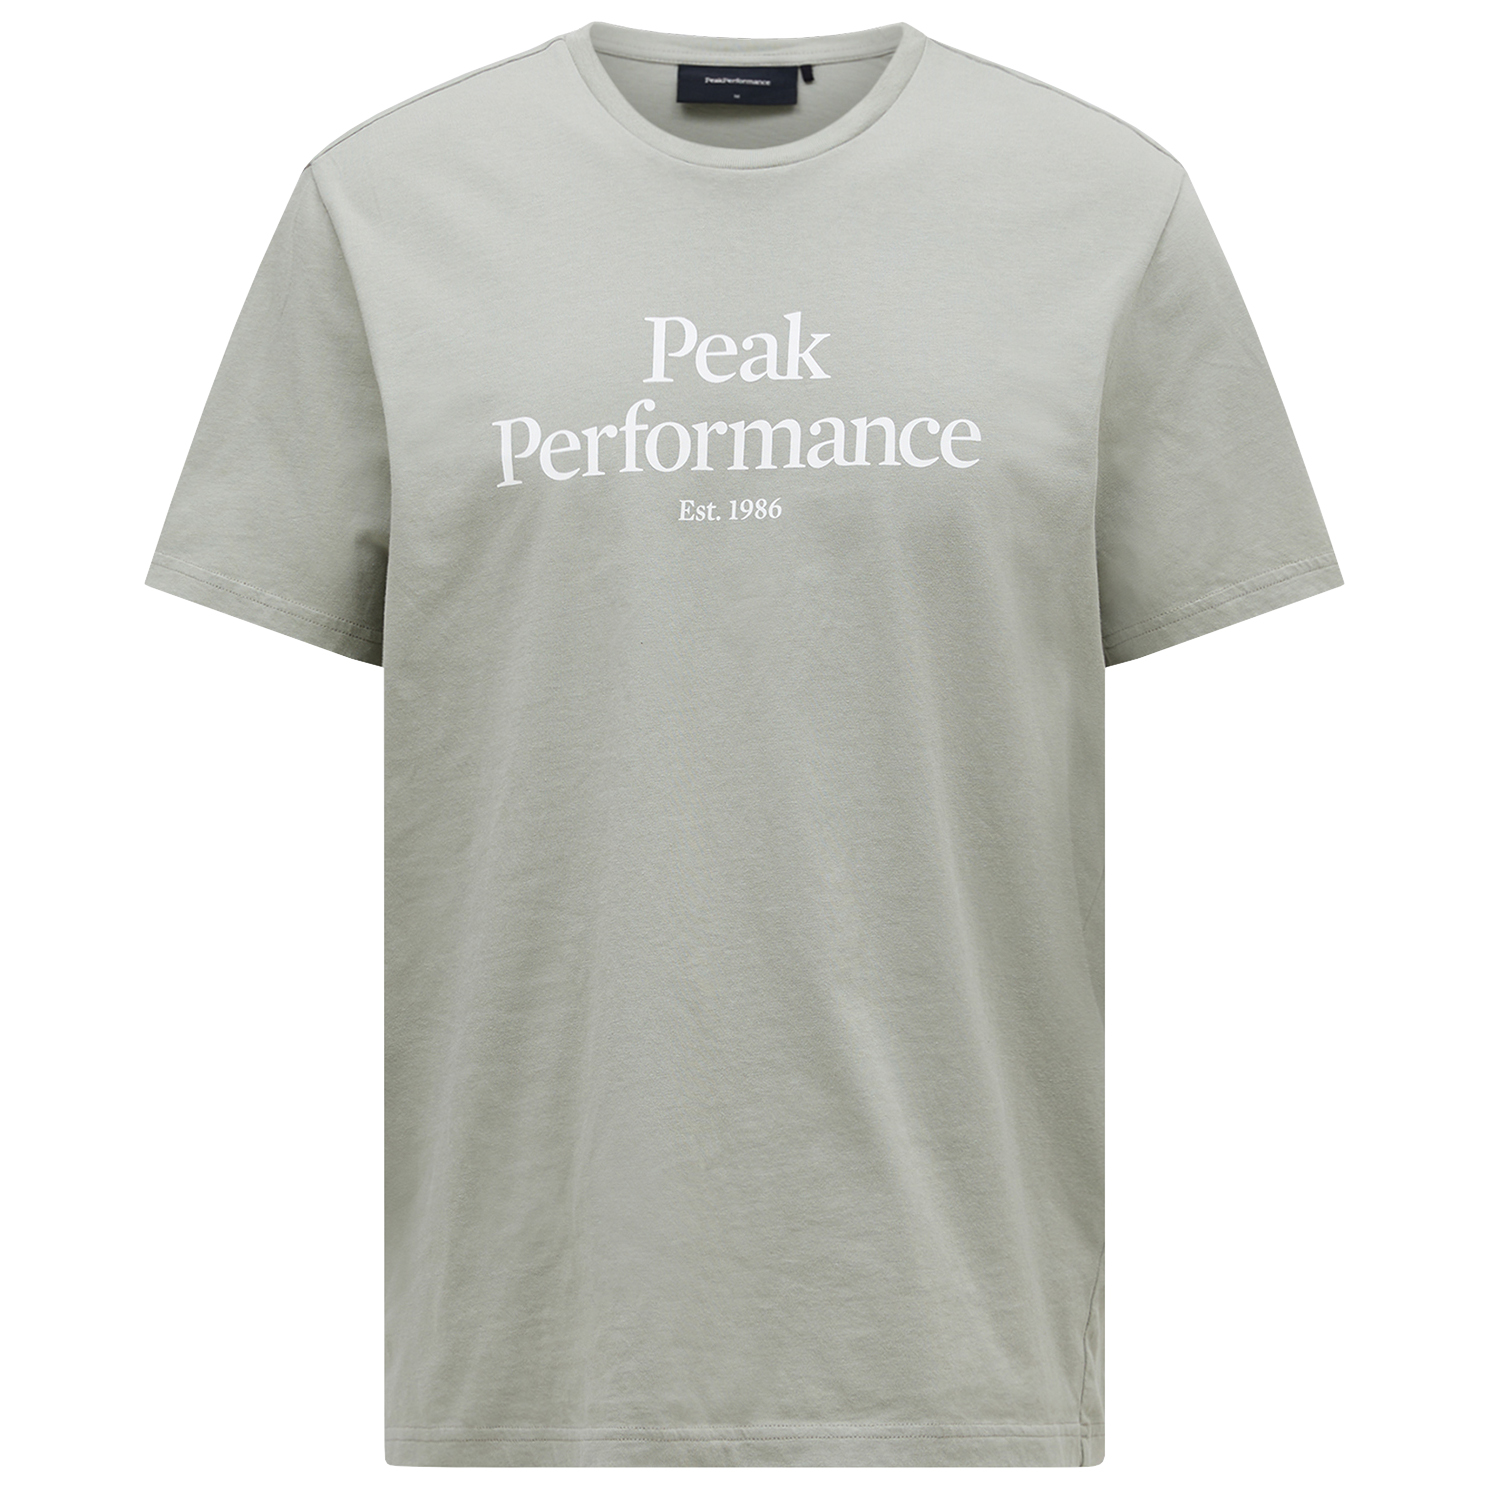 футболка с принтом original tee peak performance цвет med grey melange black Футболка Peak Performance Original Tee, цвет Limit Green